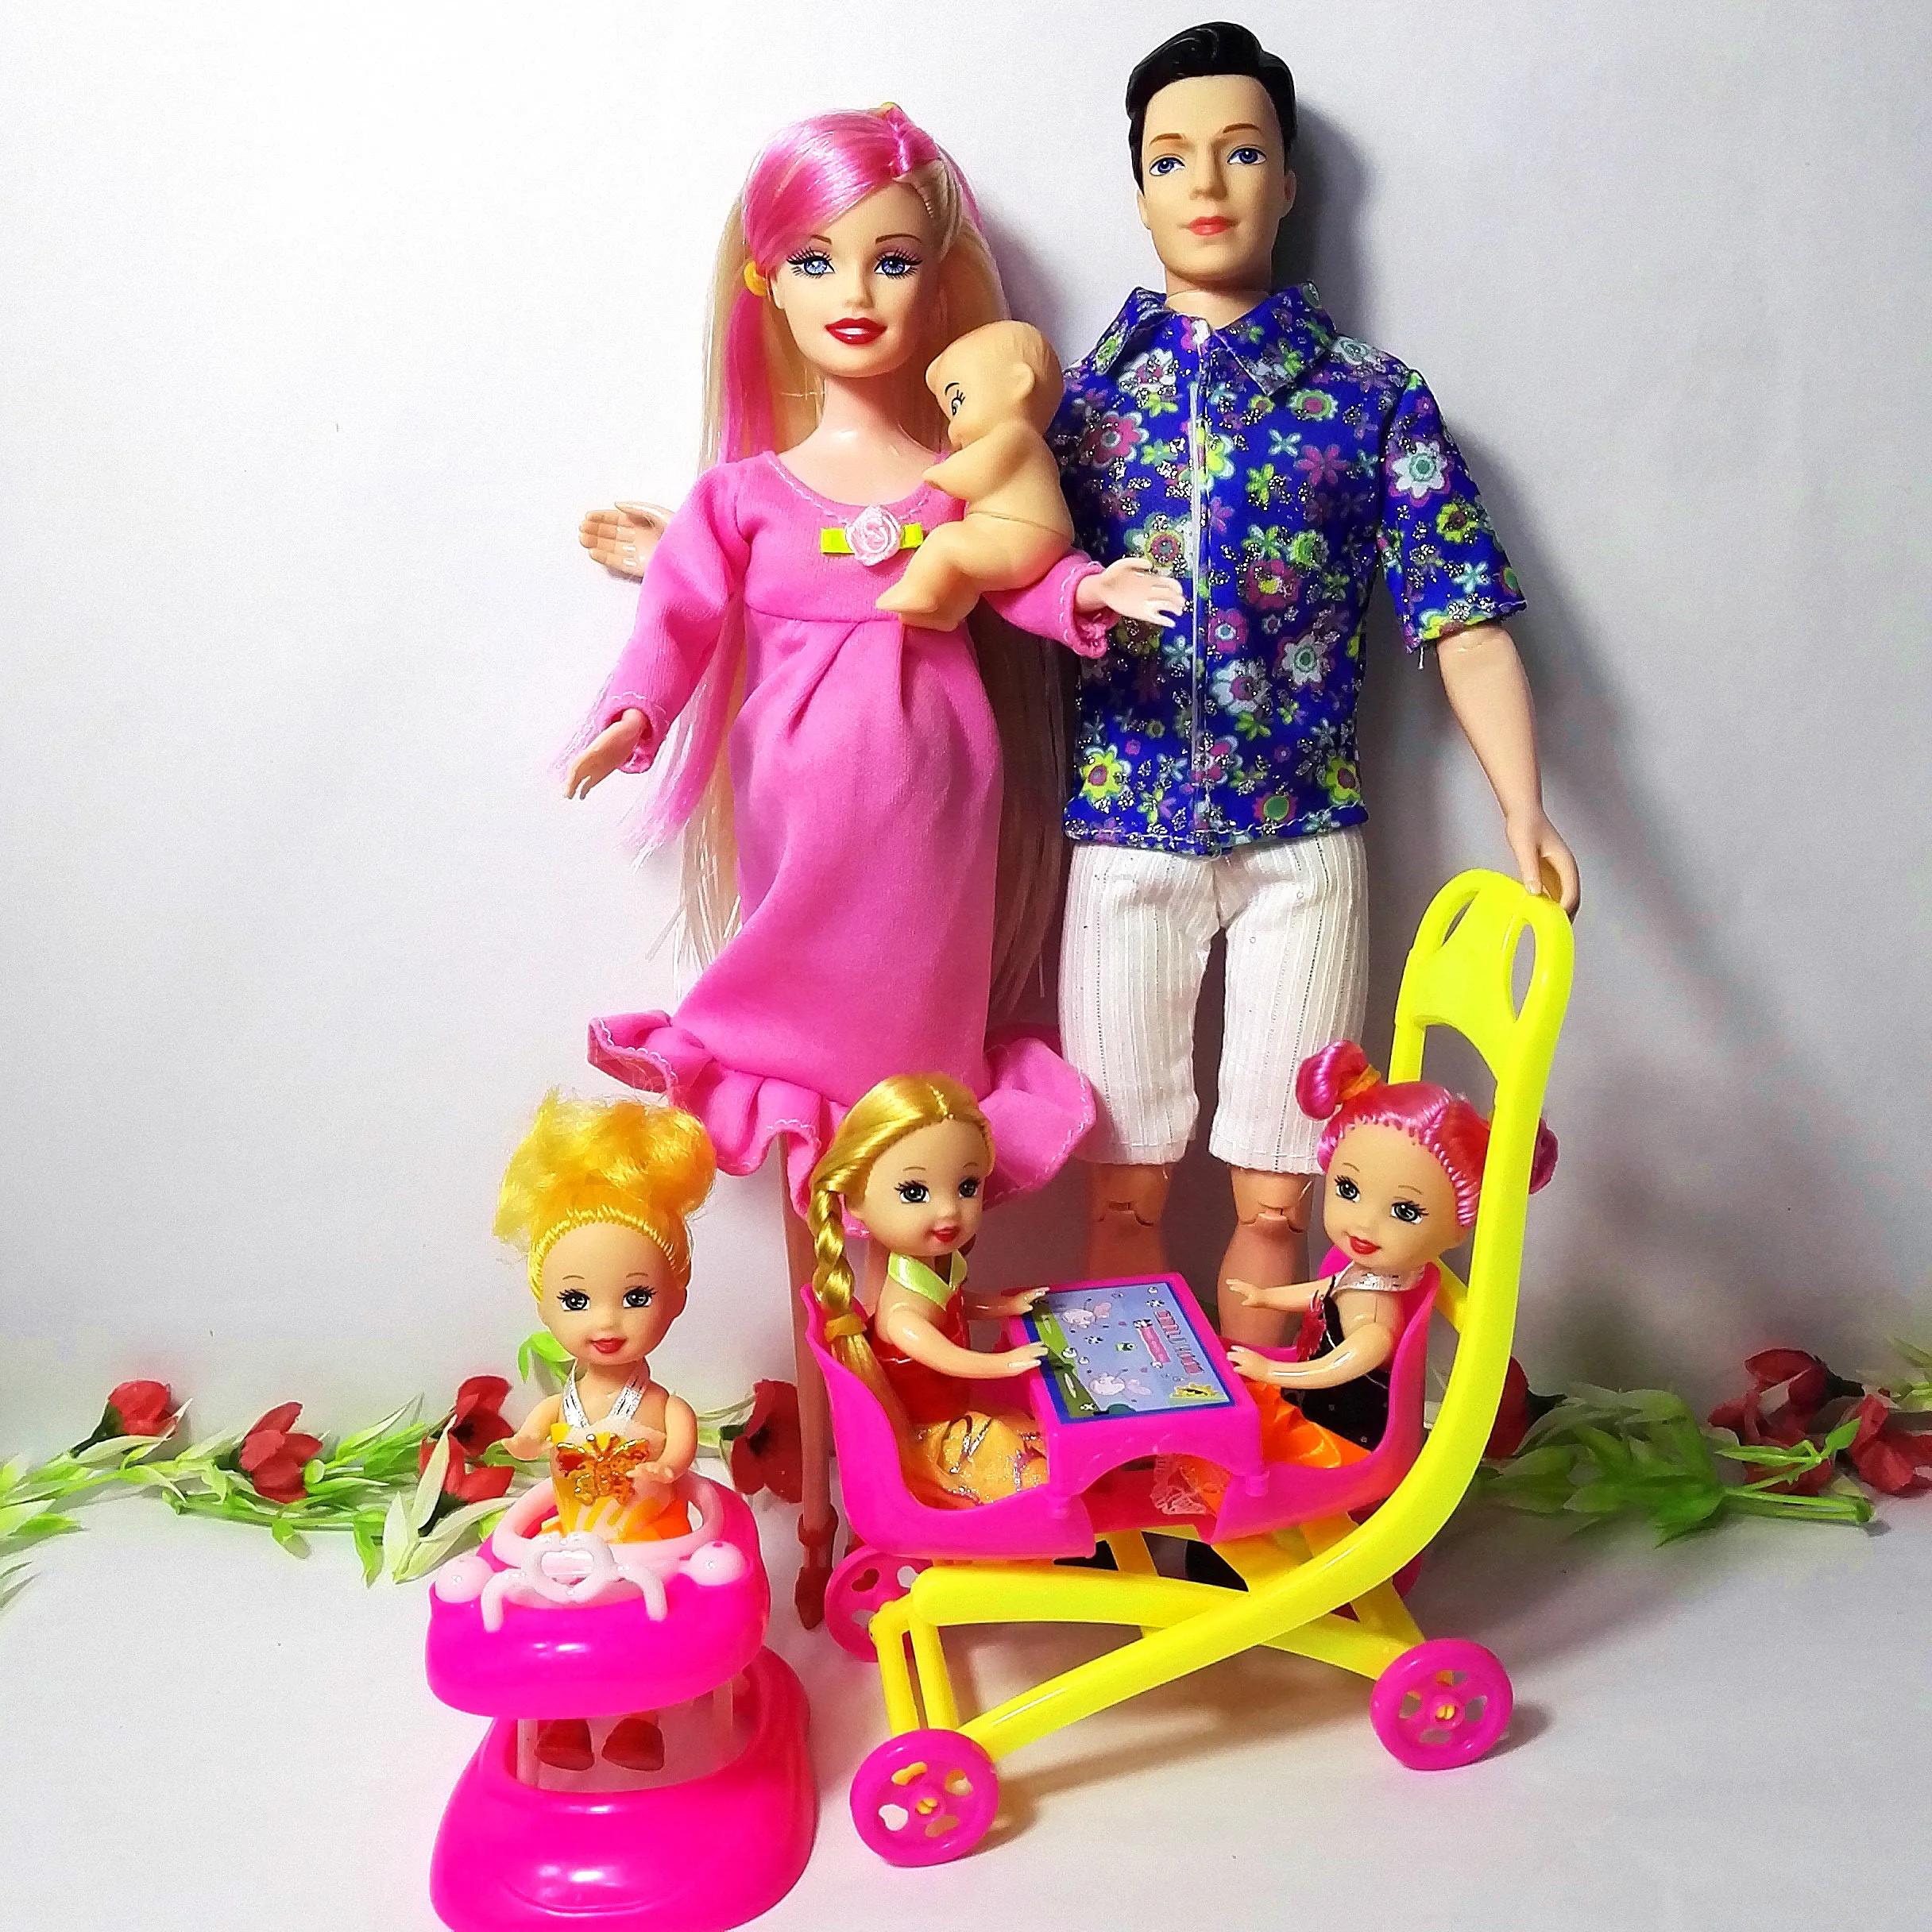 6 человек Семья куклы костюмы мама/папа/сын ребенок/Келли/карета девочки игрушки Мода беременных куклы детские игрушки подарок на день рождения кукла